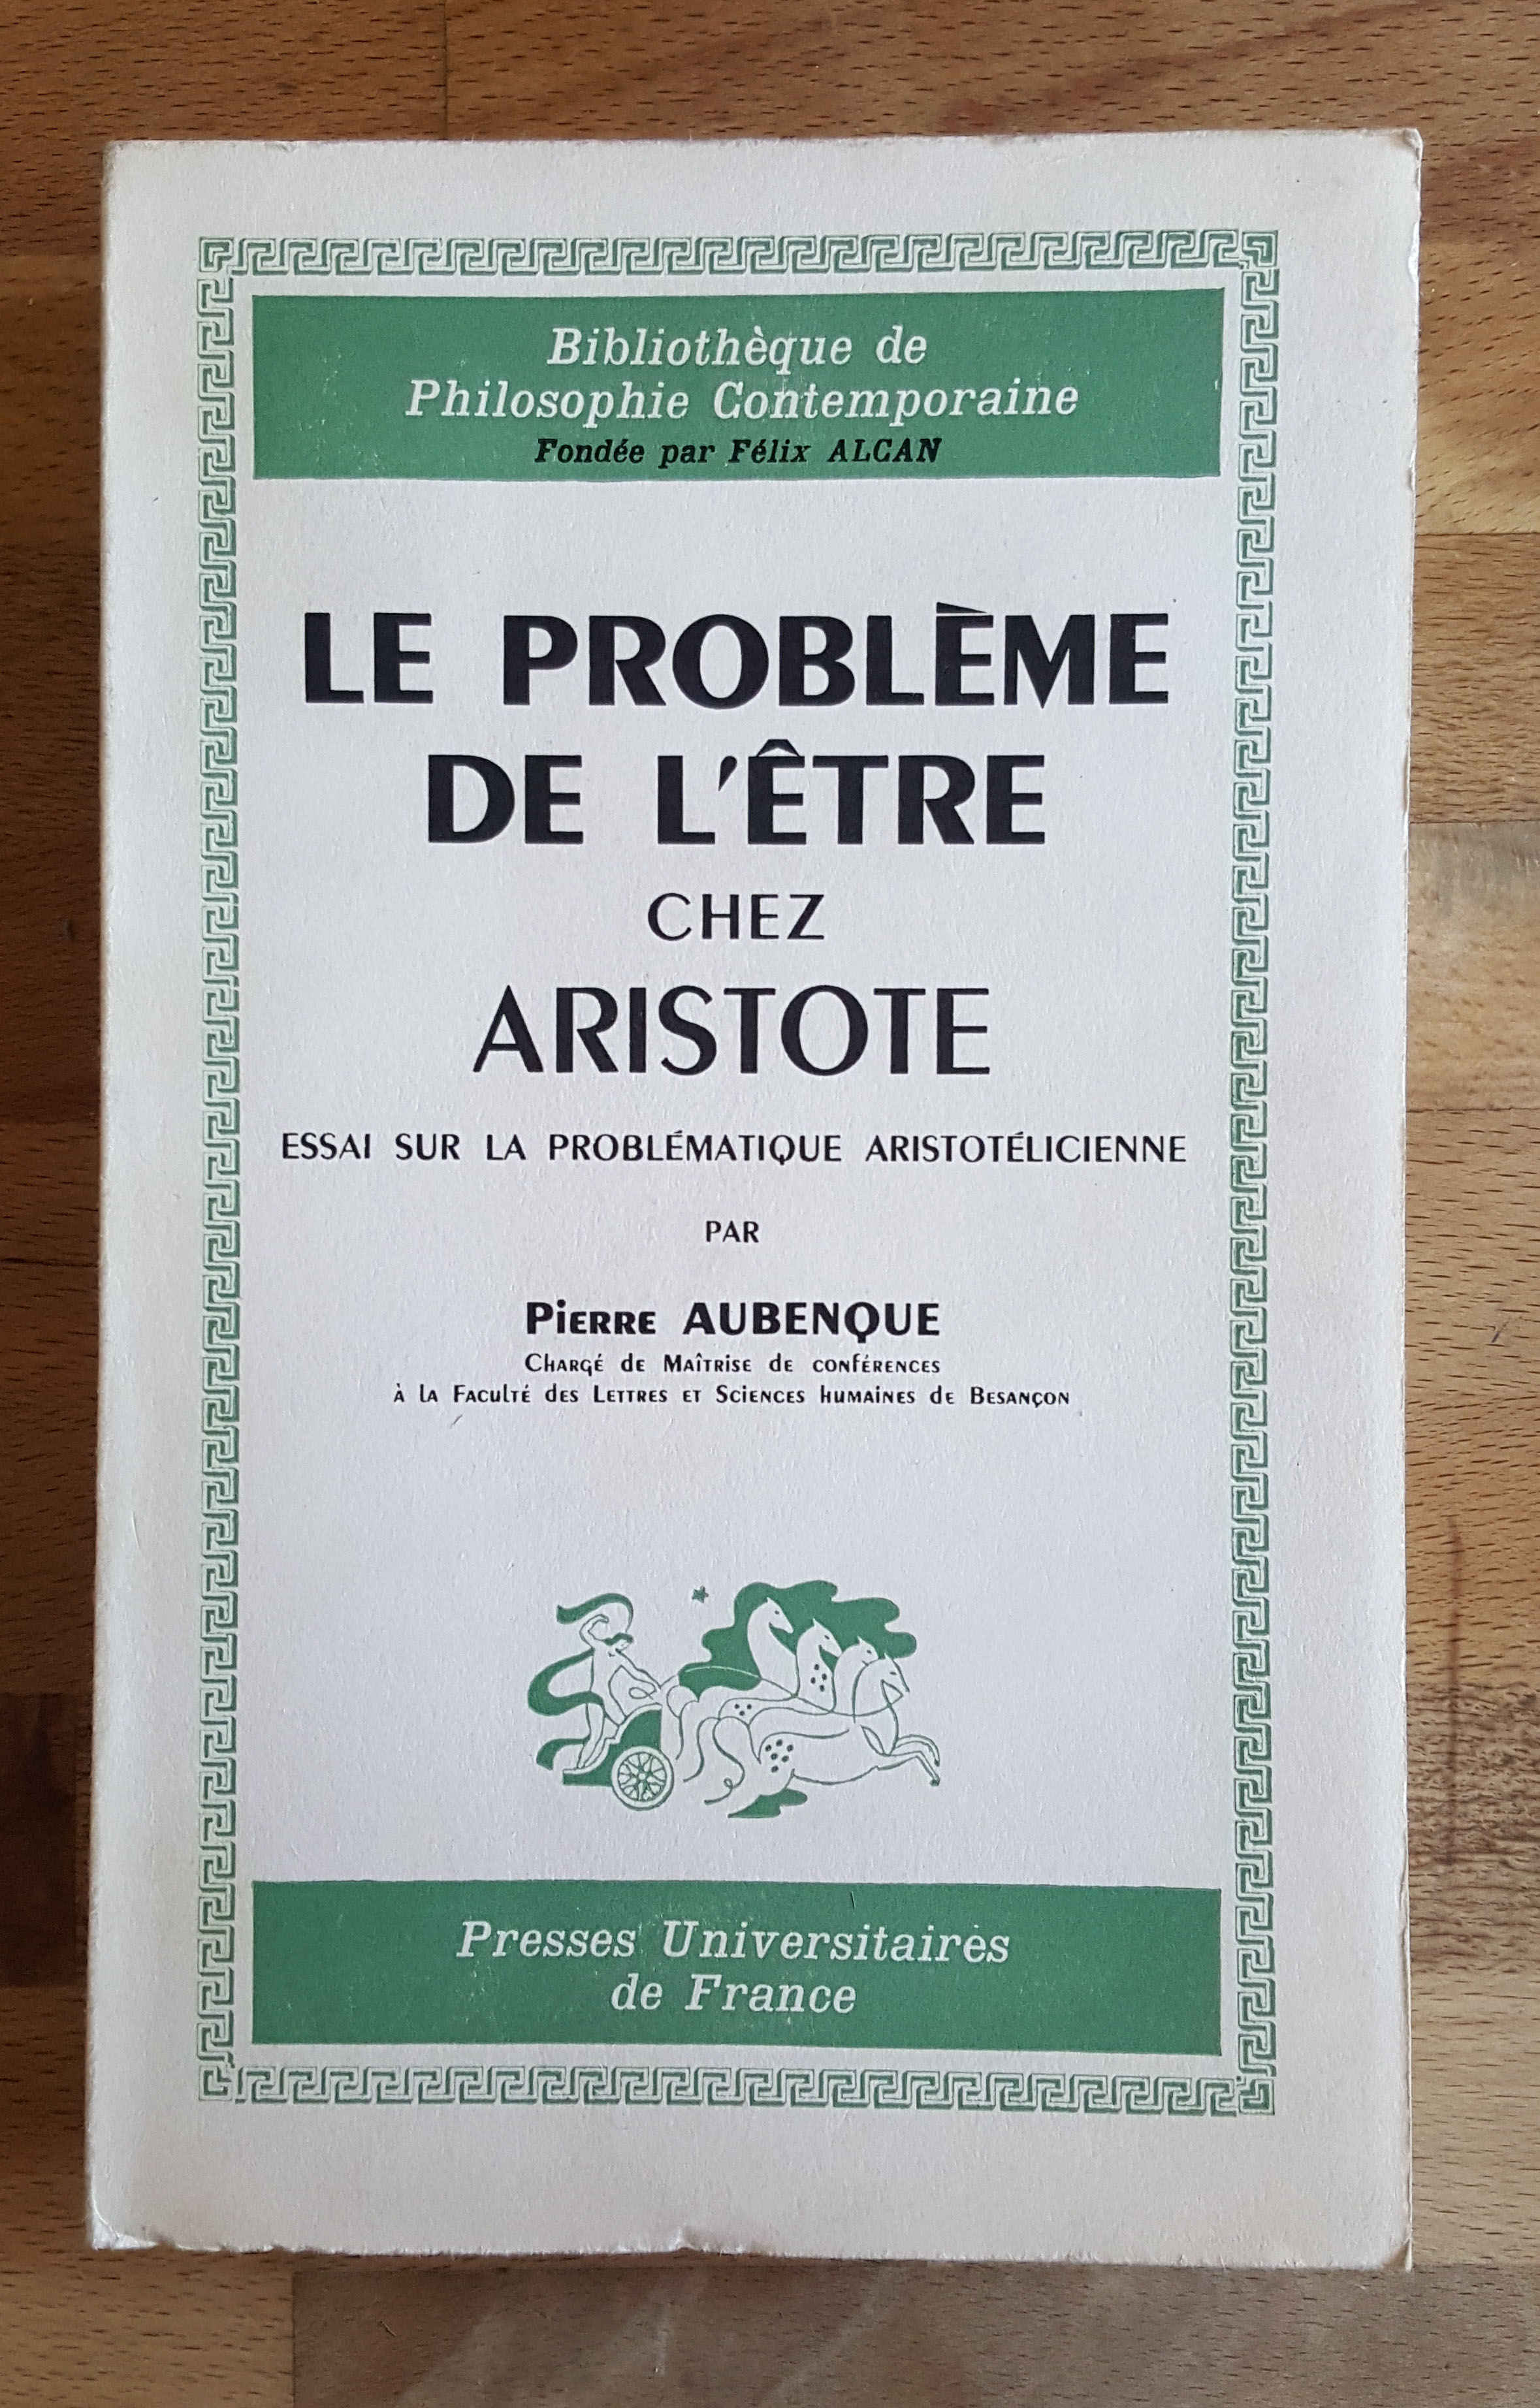 Le Problème de l'être chez Aristote. Essai sur la problématique aristotélicienne - AUBENQUE Pierre